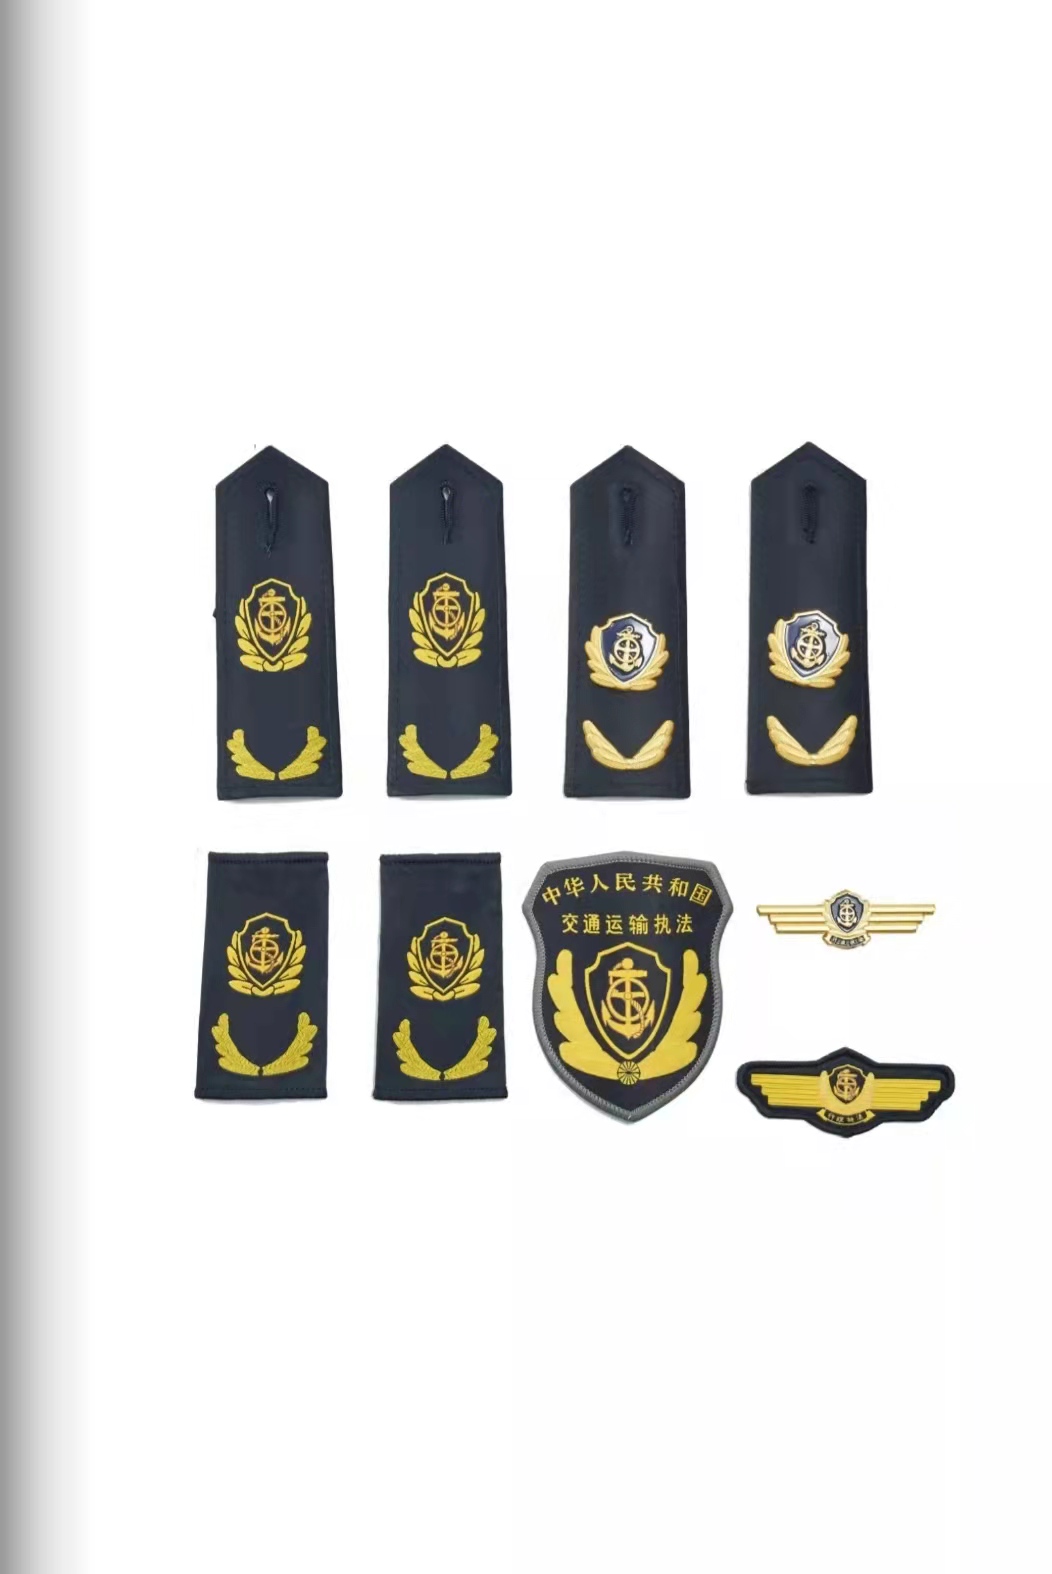 黑河六部门统一交通运输执法服装标志